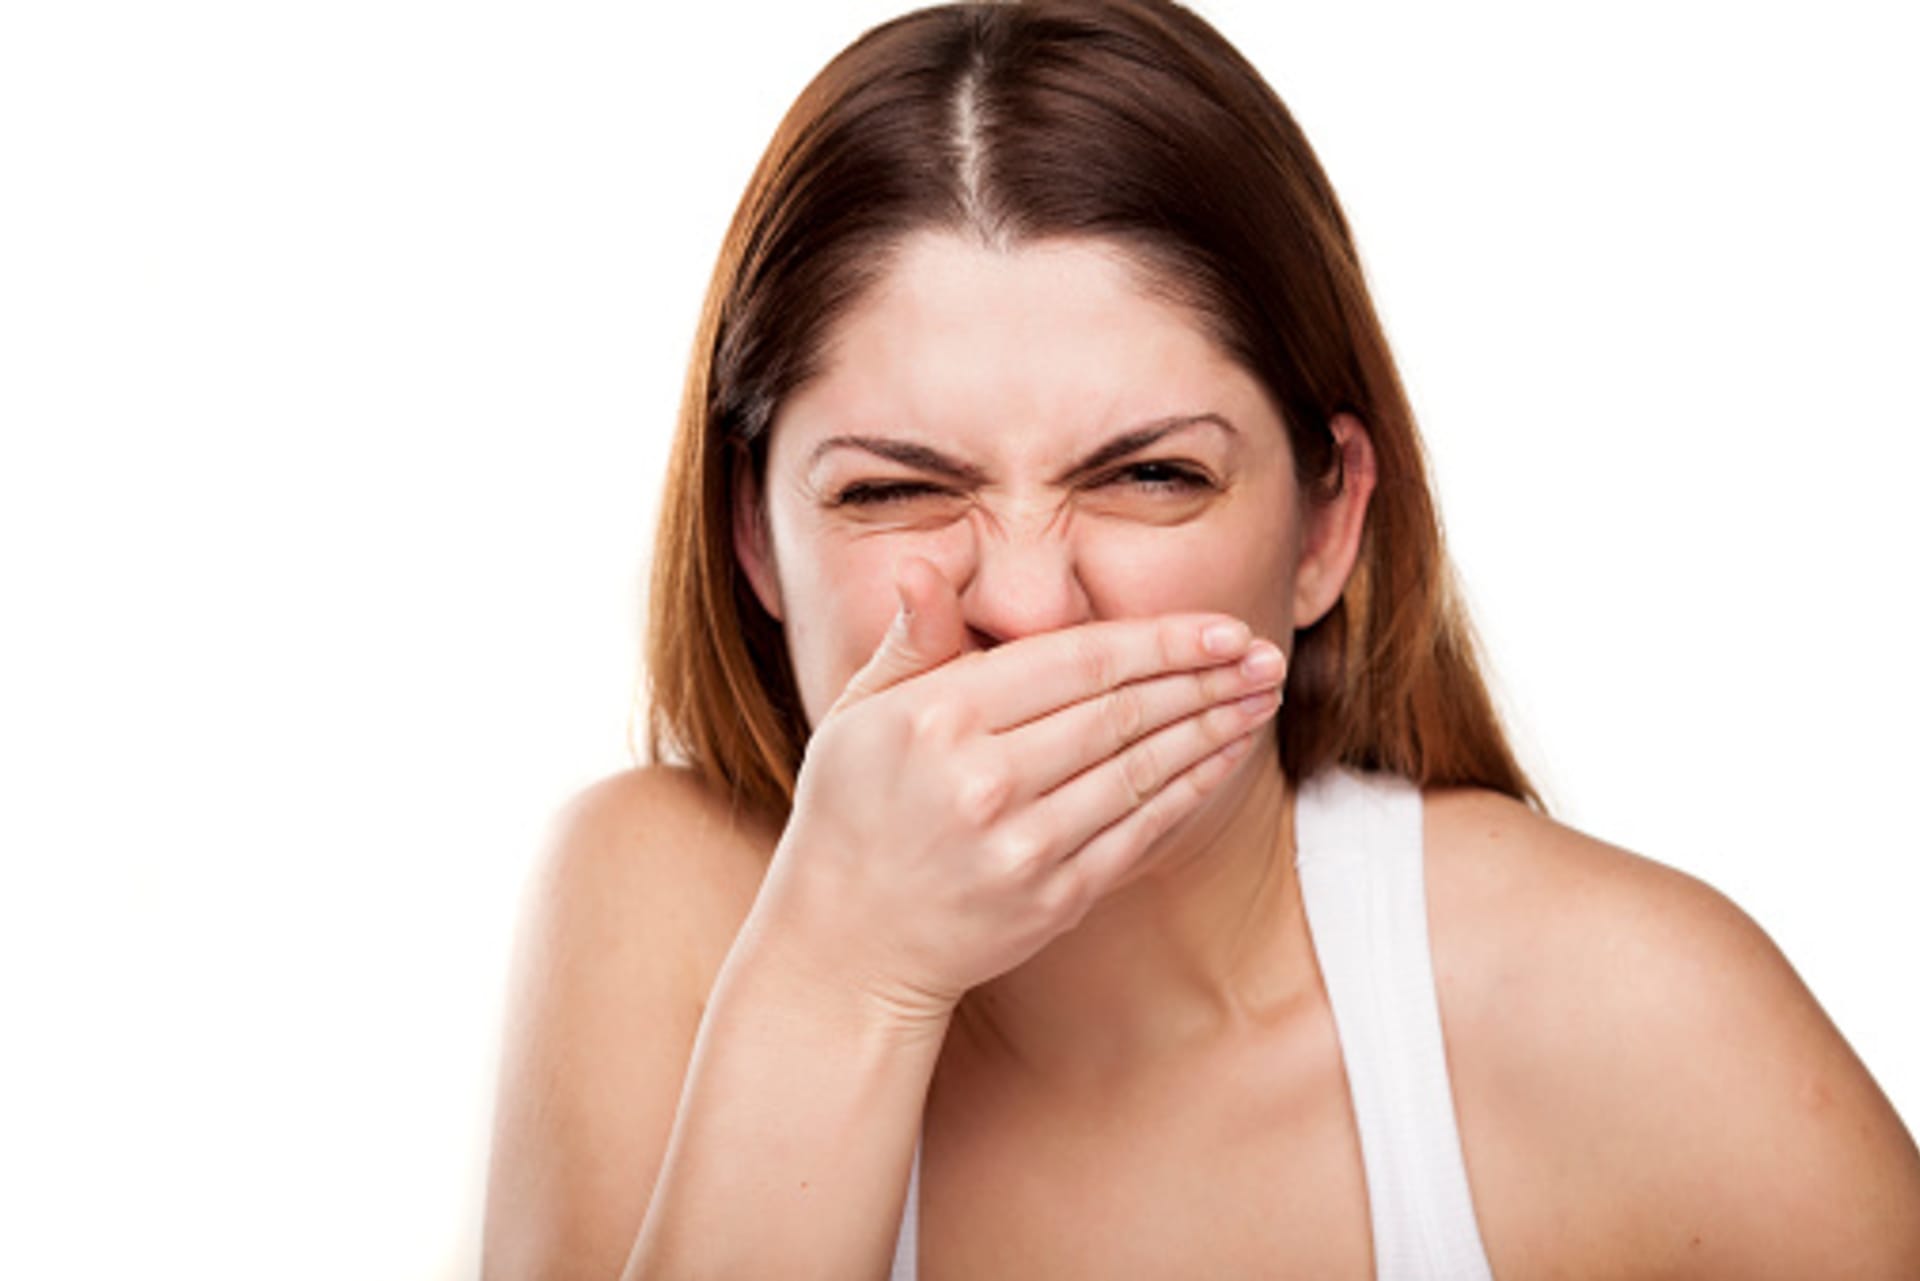 Příčinou zápachu mohou být problémy se zuby, nevhodný jídelníček nebo třeba nemoc